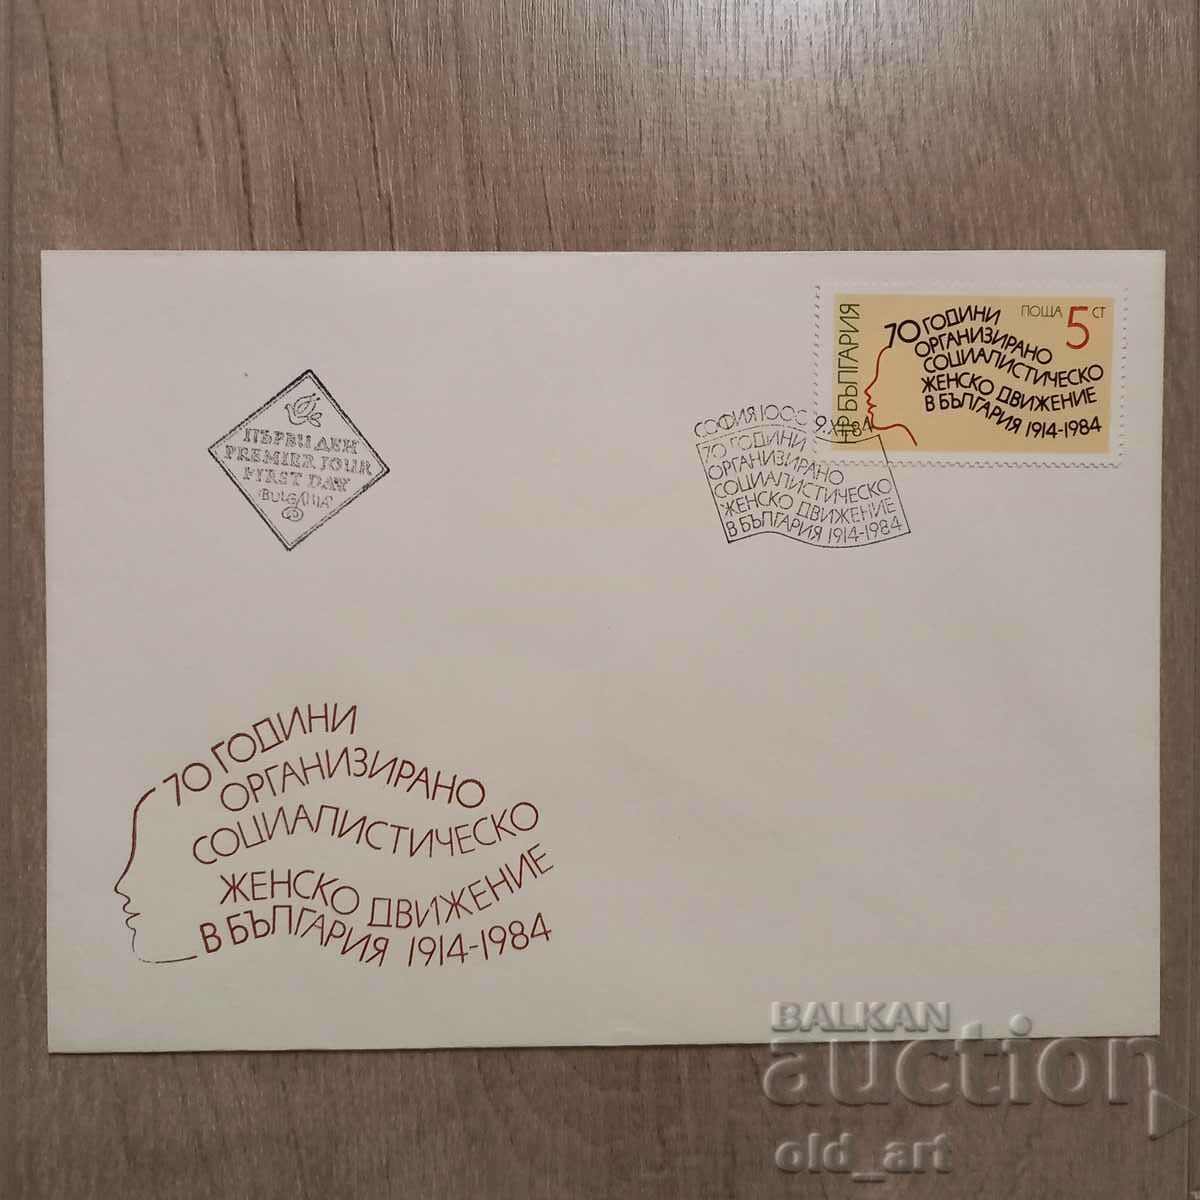 Ταχυδρομικός φάκελος - 70 ετών οργ. κοινωνικό γυναικείο κίνημα στη Βουλγαρία